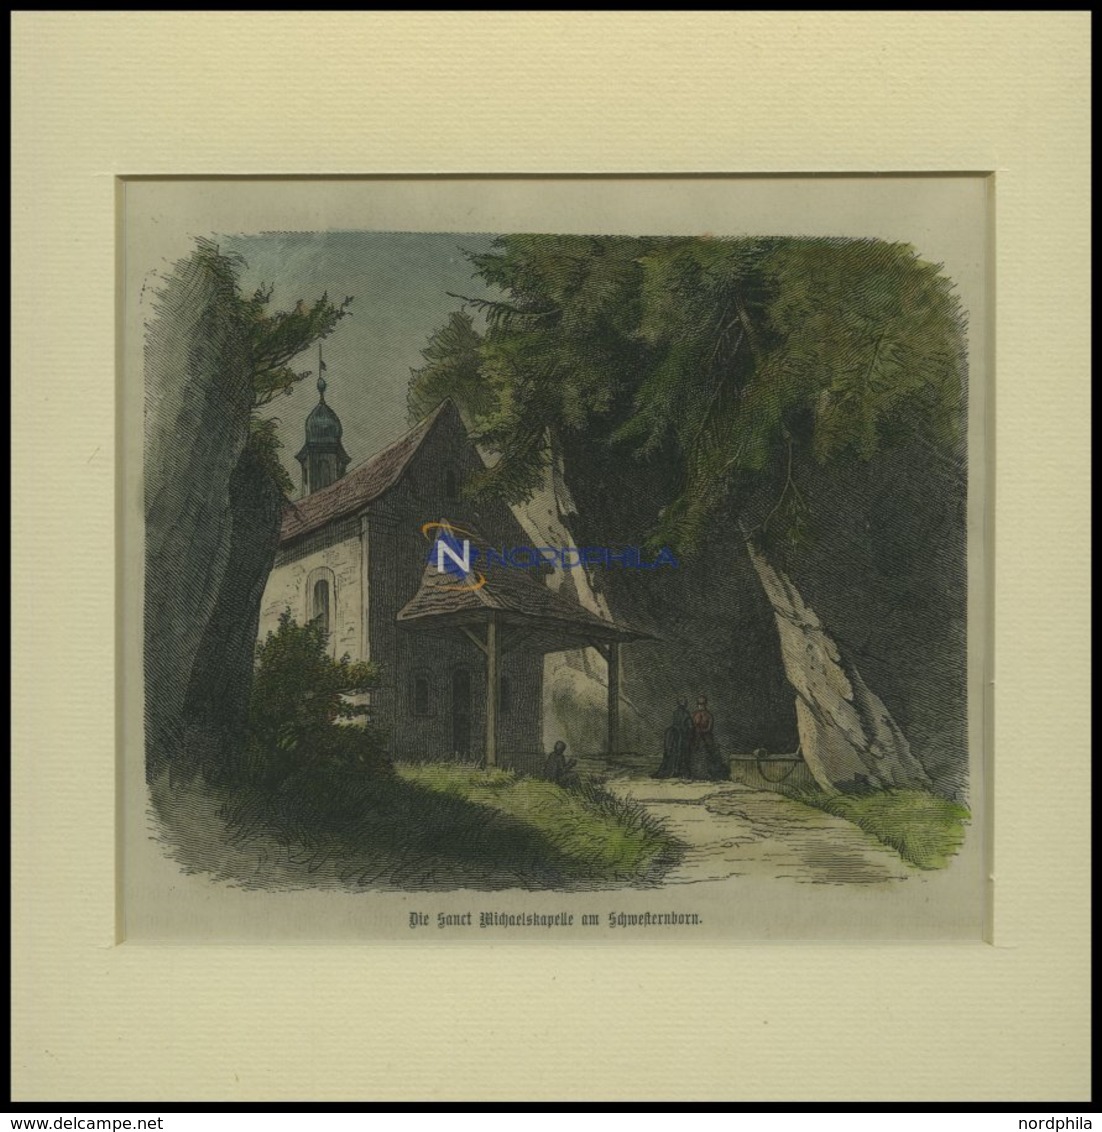 ST. MICHAELSKAPPELE Am Schwesternborn, Kolorierter Holzstich Um 1880 - Lithografieën